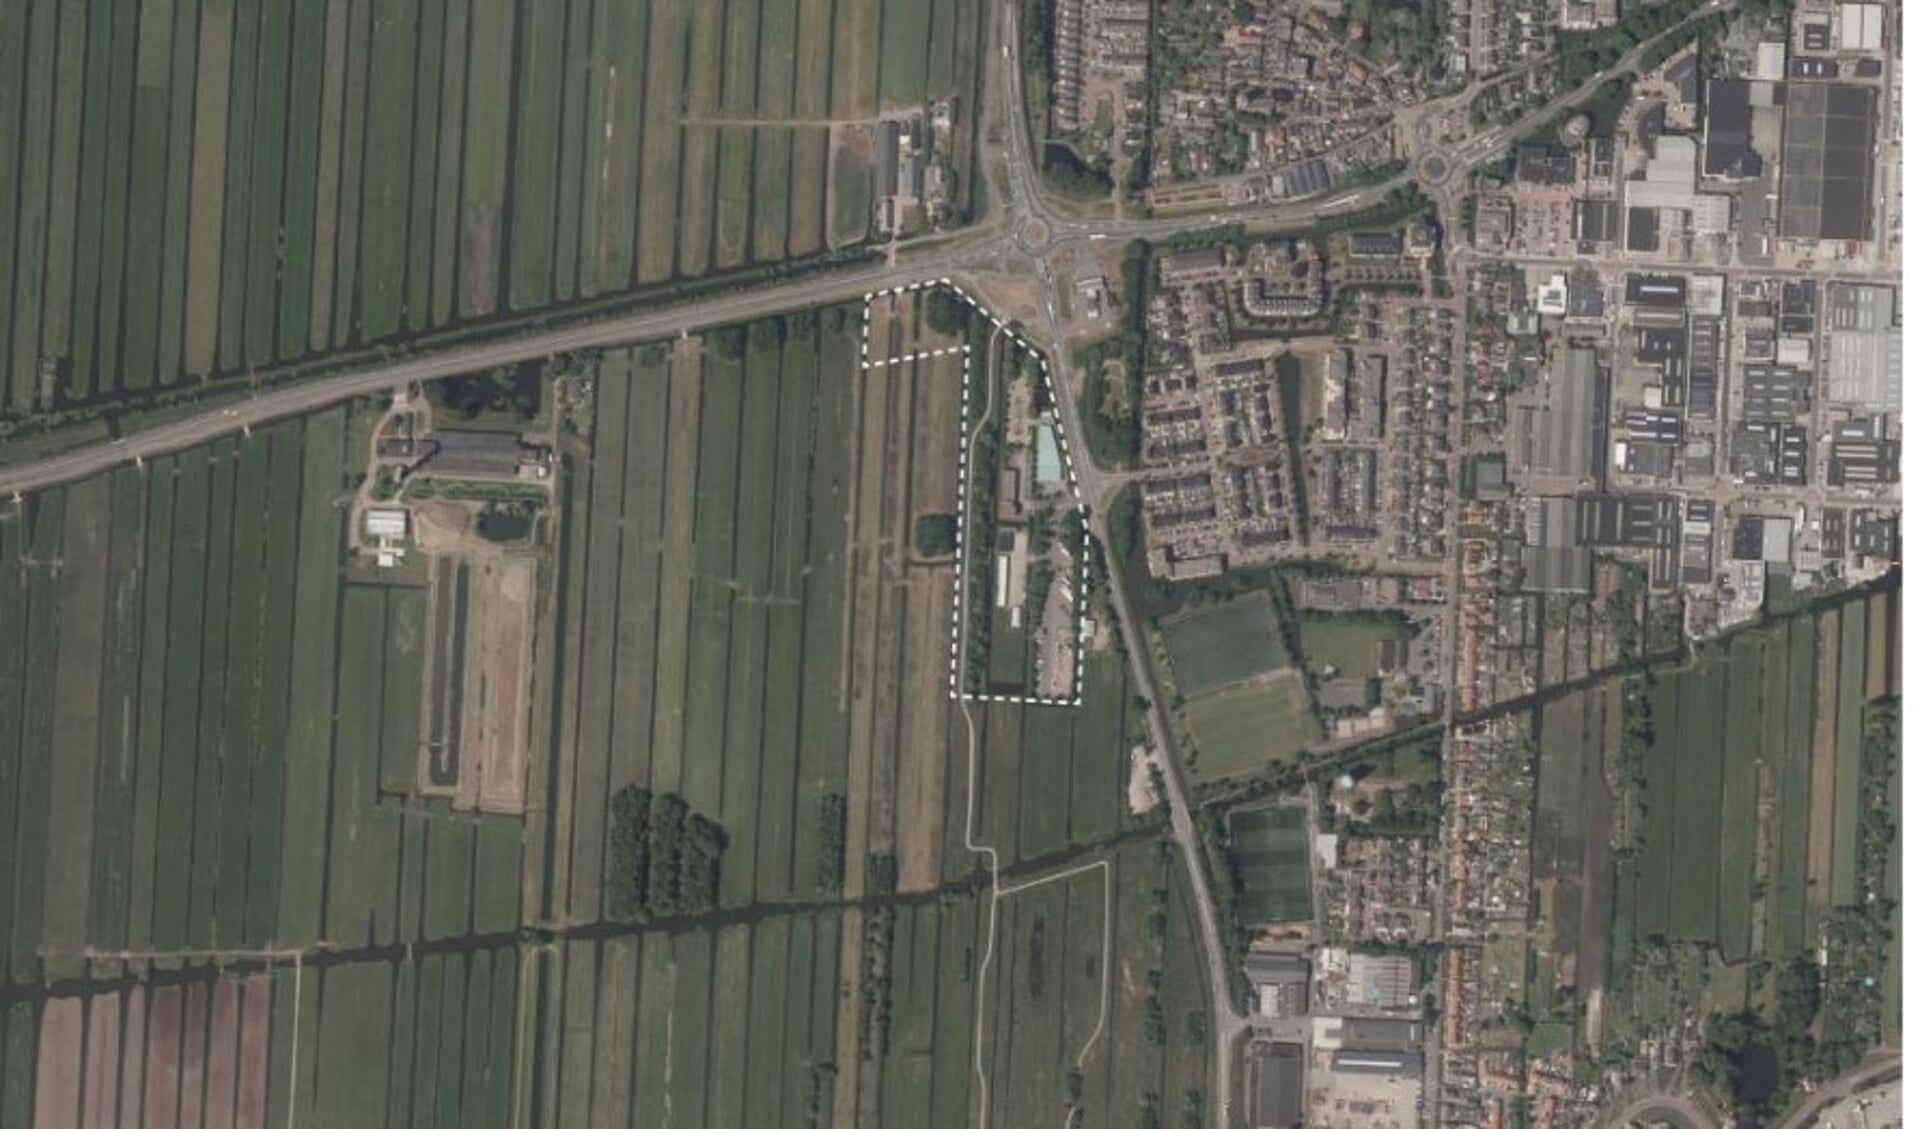 • Luchtfoto van de huidige situatie, met een markering van de geplande locatie van het nieuwe gemeentehuis (linksboven).